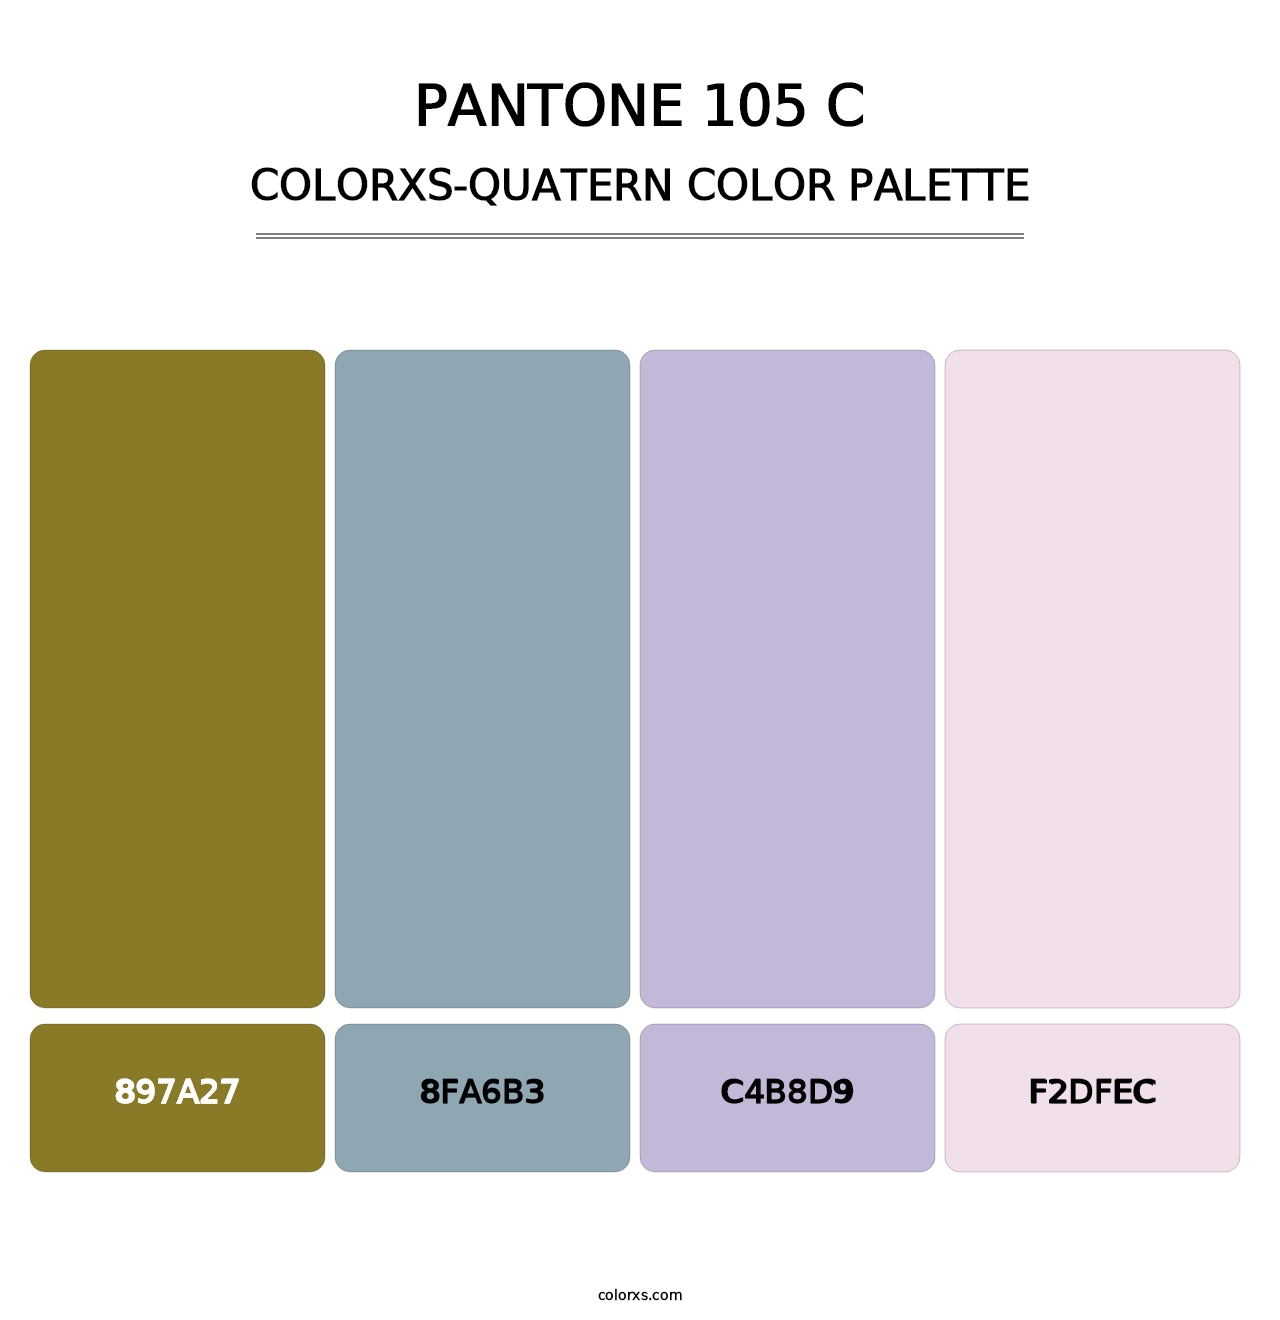 PANTONE 105 C - Colorxs Quatern Palette